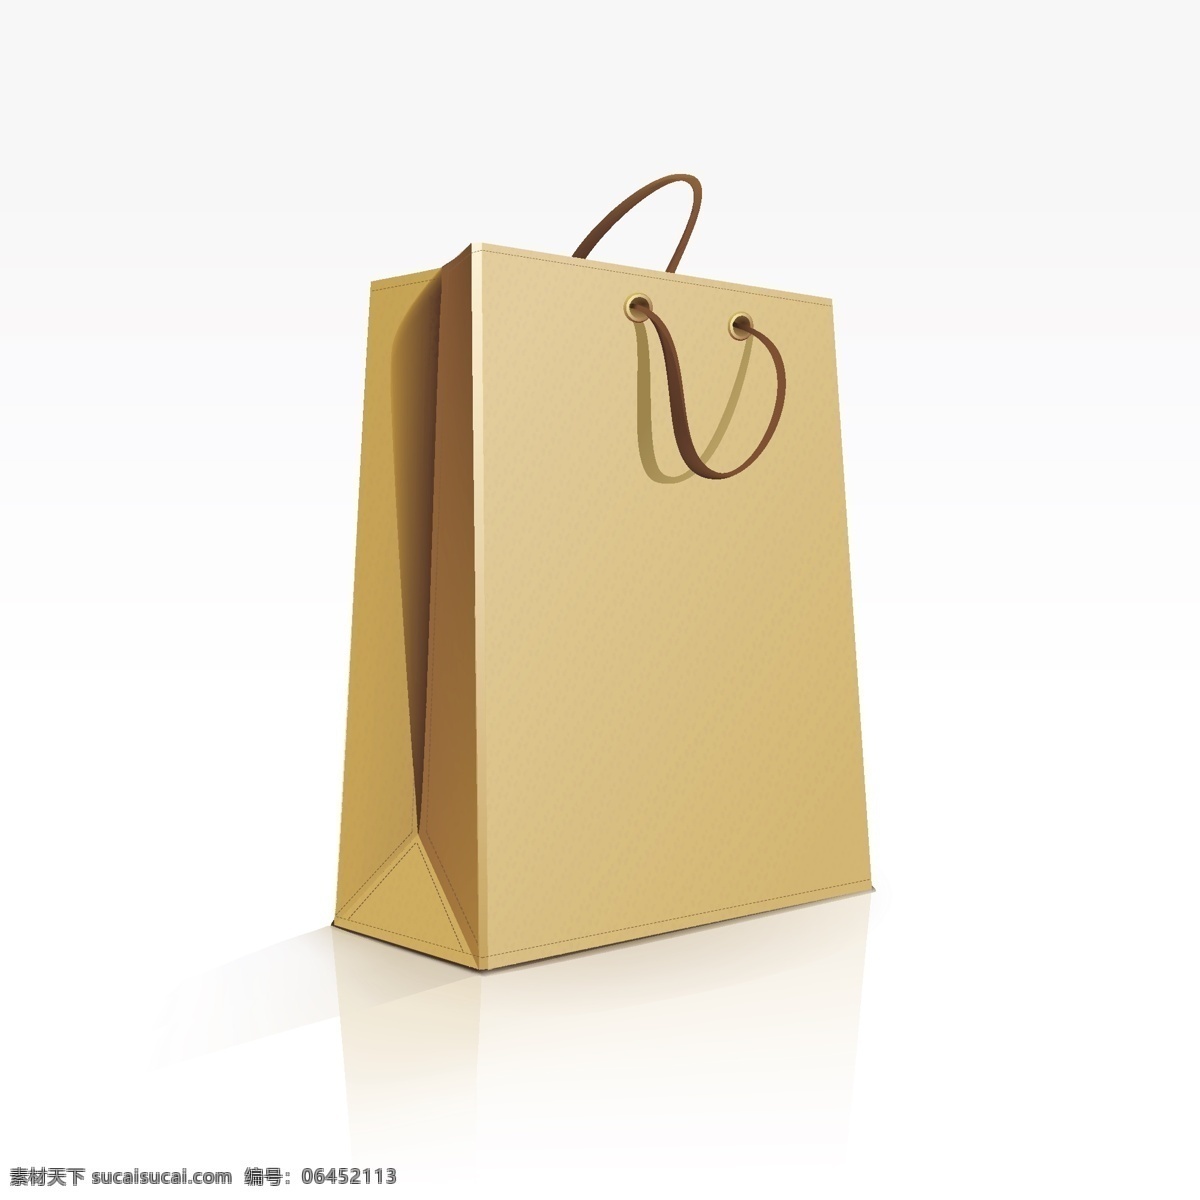 纸袋免费下载 购物袋 纸袋 商品袋 矢量图